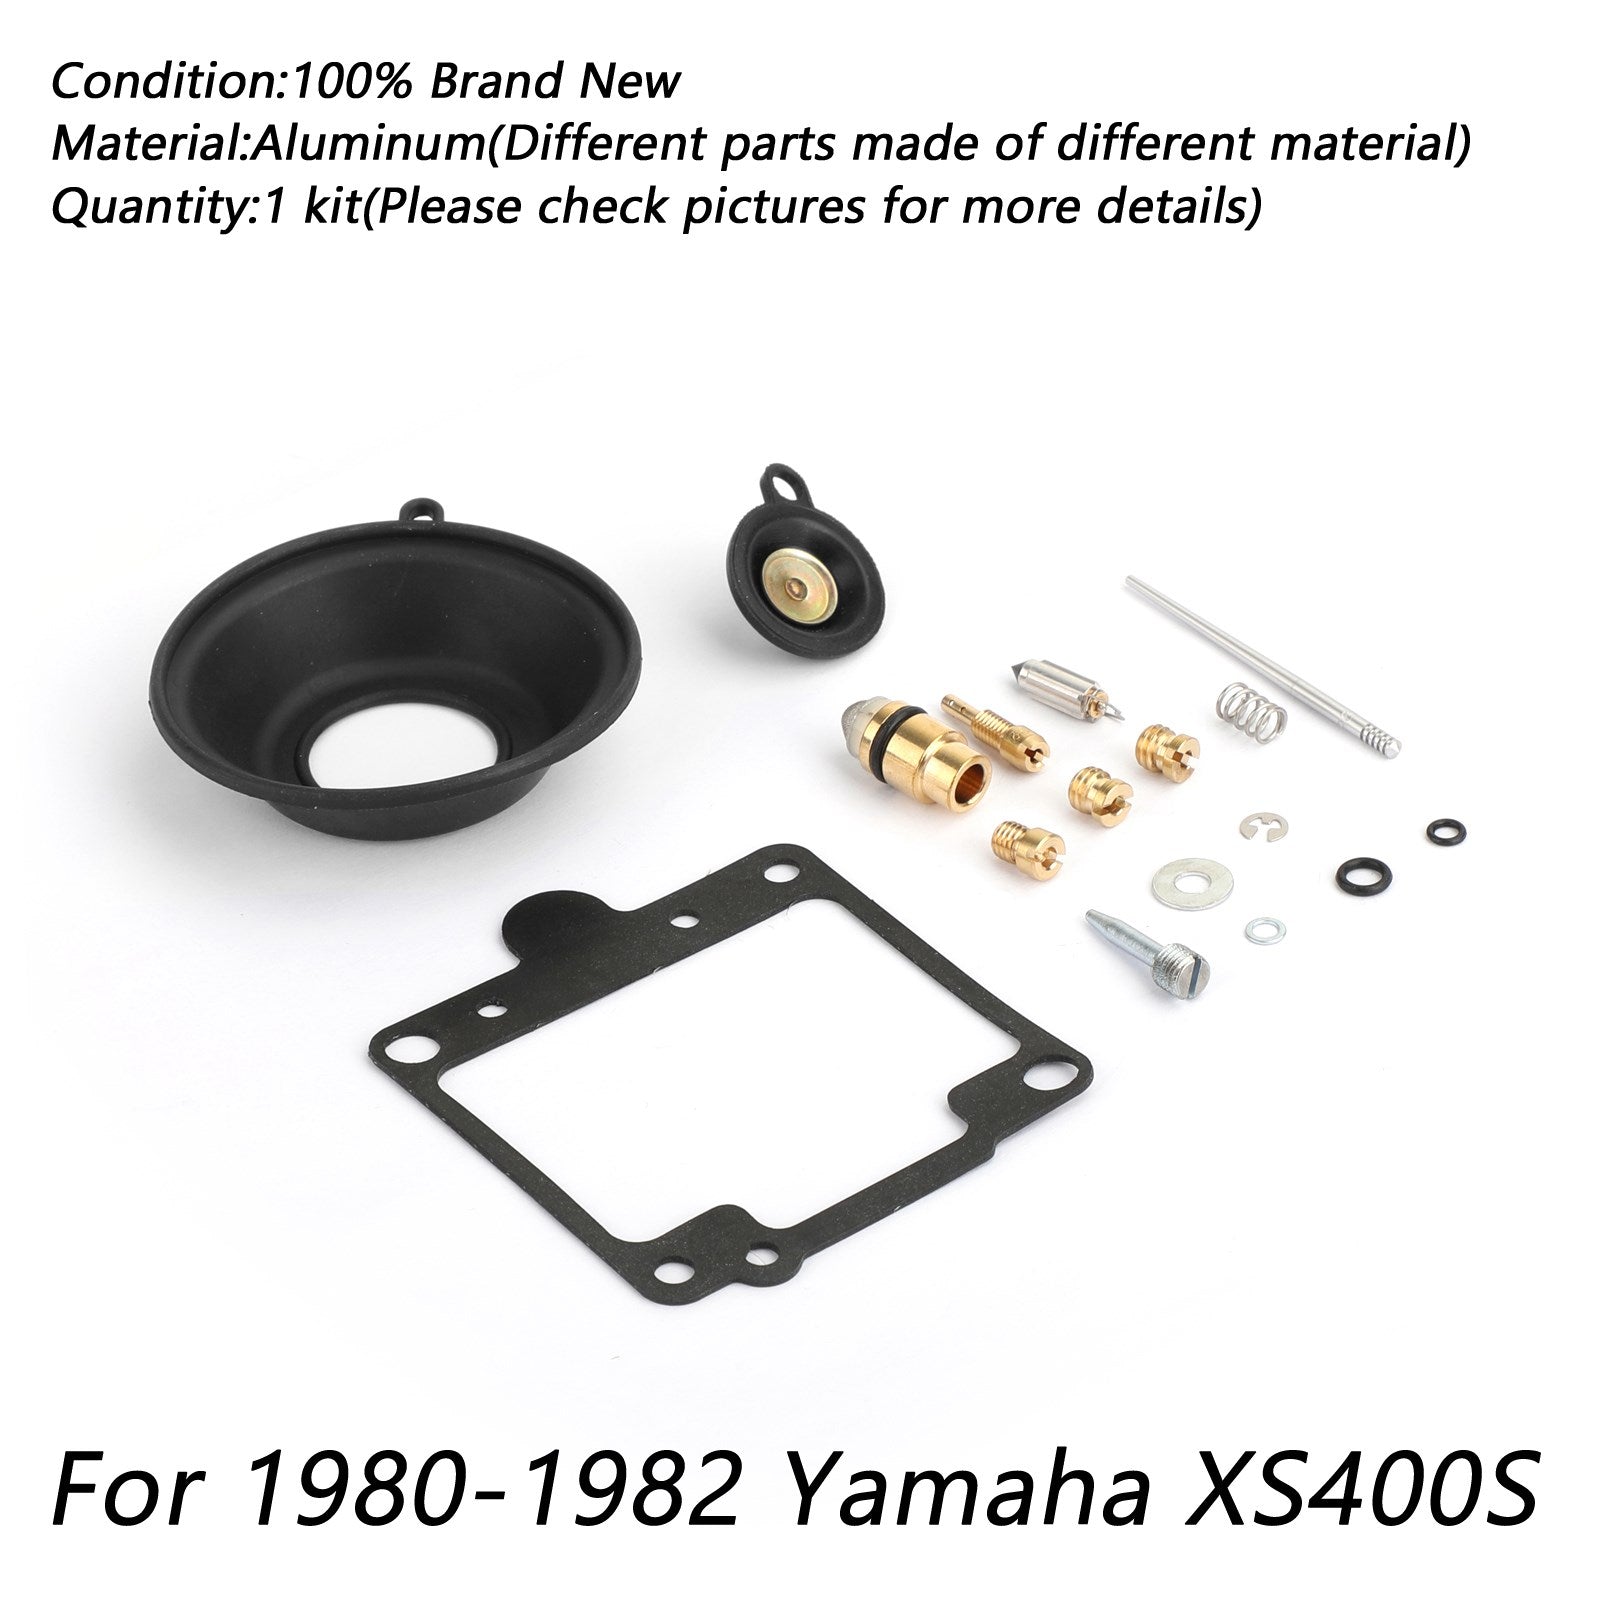 2x kit di ricostruzione riparazione carburatore per Yamaha XS400 SE Special 1980-1982 1981 Nuovo